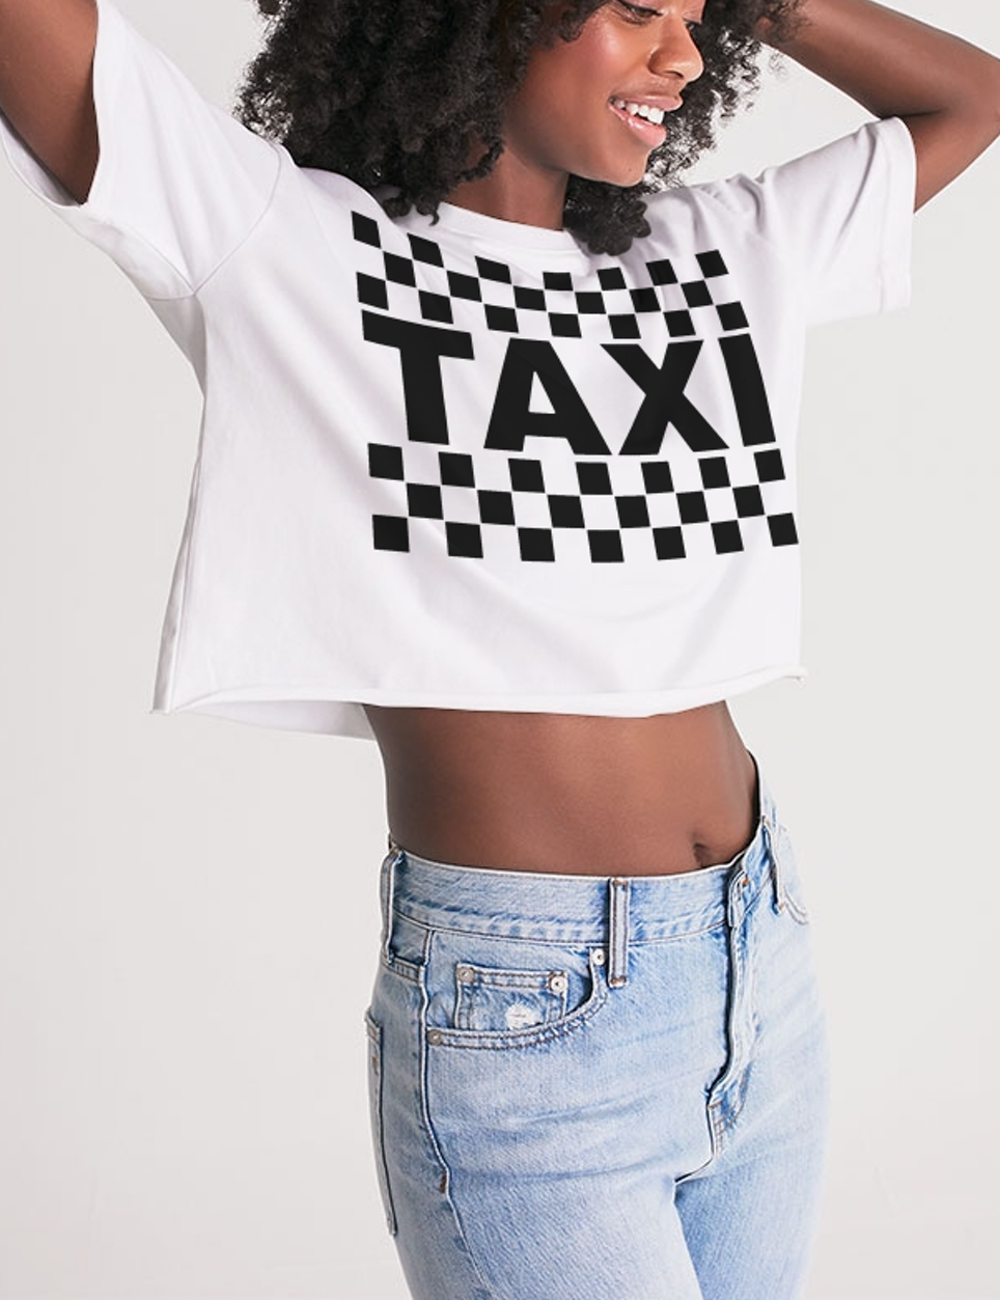 Classic Taxi Sign Women's Oversized Crop Top T-Shirt OniTakai